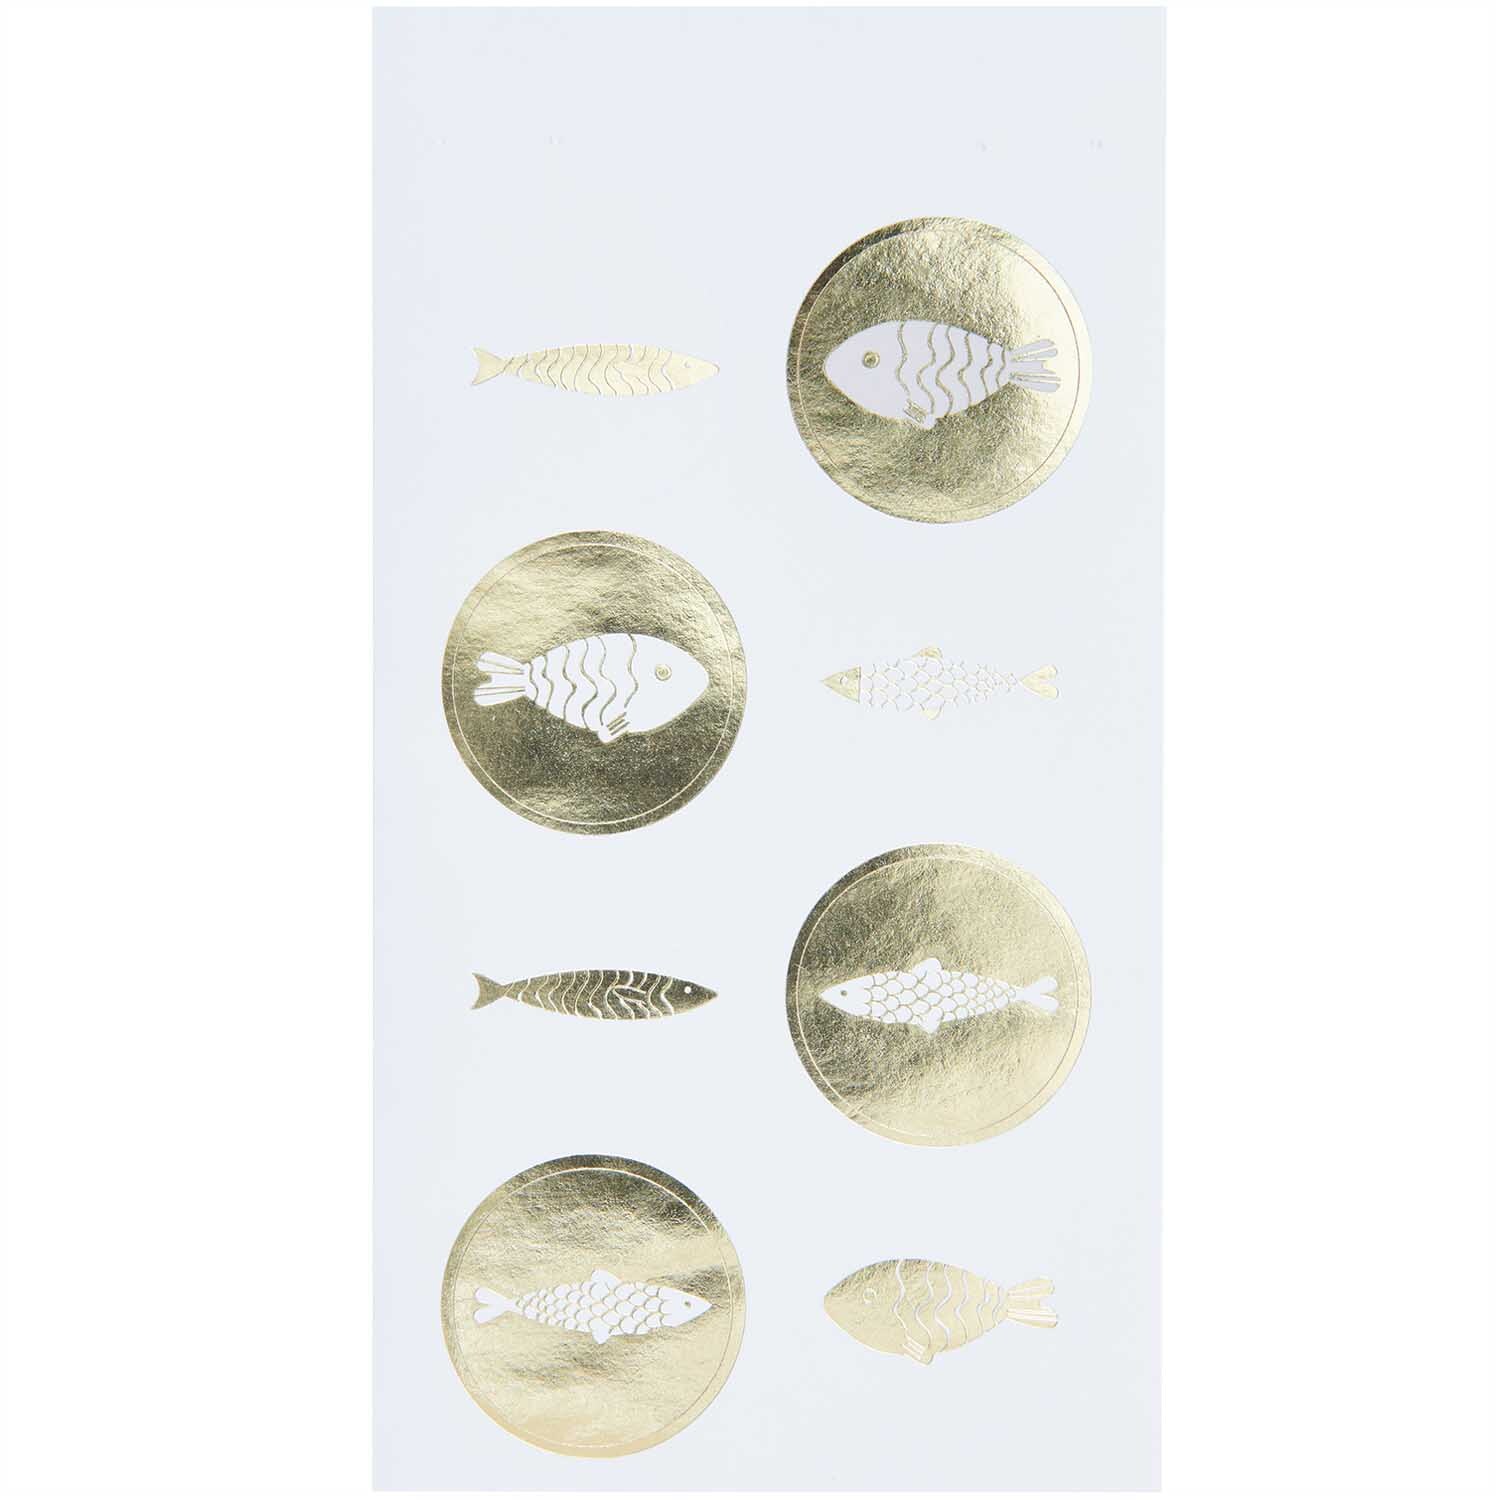 Paper Poetry Sticker Fische weiß-gold 4 Blatt